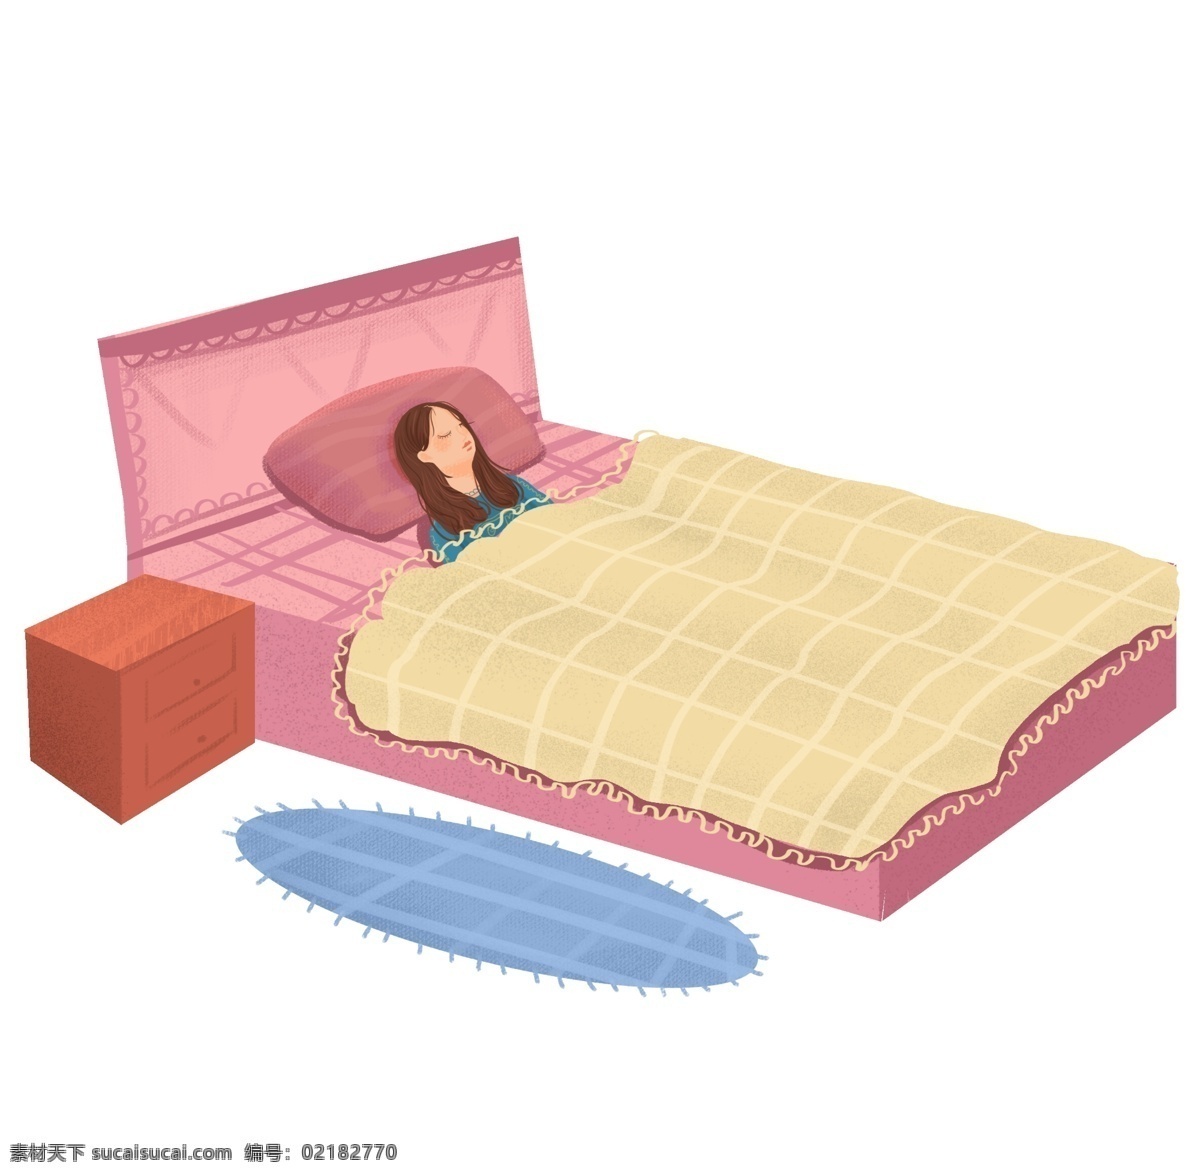 世界 睡眠 日 粉 床 插画 粉色的大床 卡通插画 睡觉插画 睡眠插画 做梦插画 休息插画 睡眠的女孩